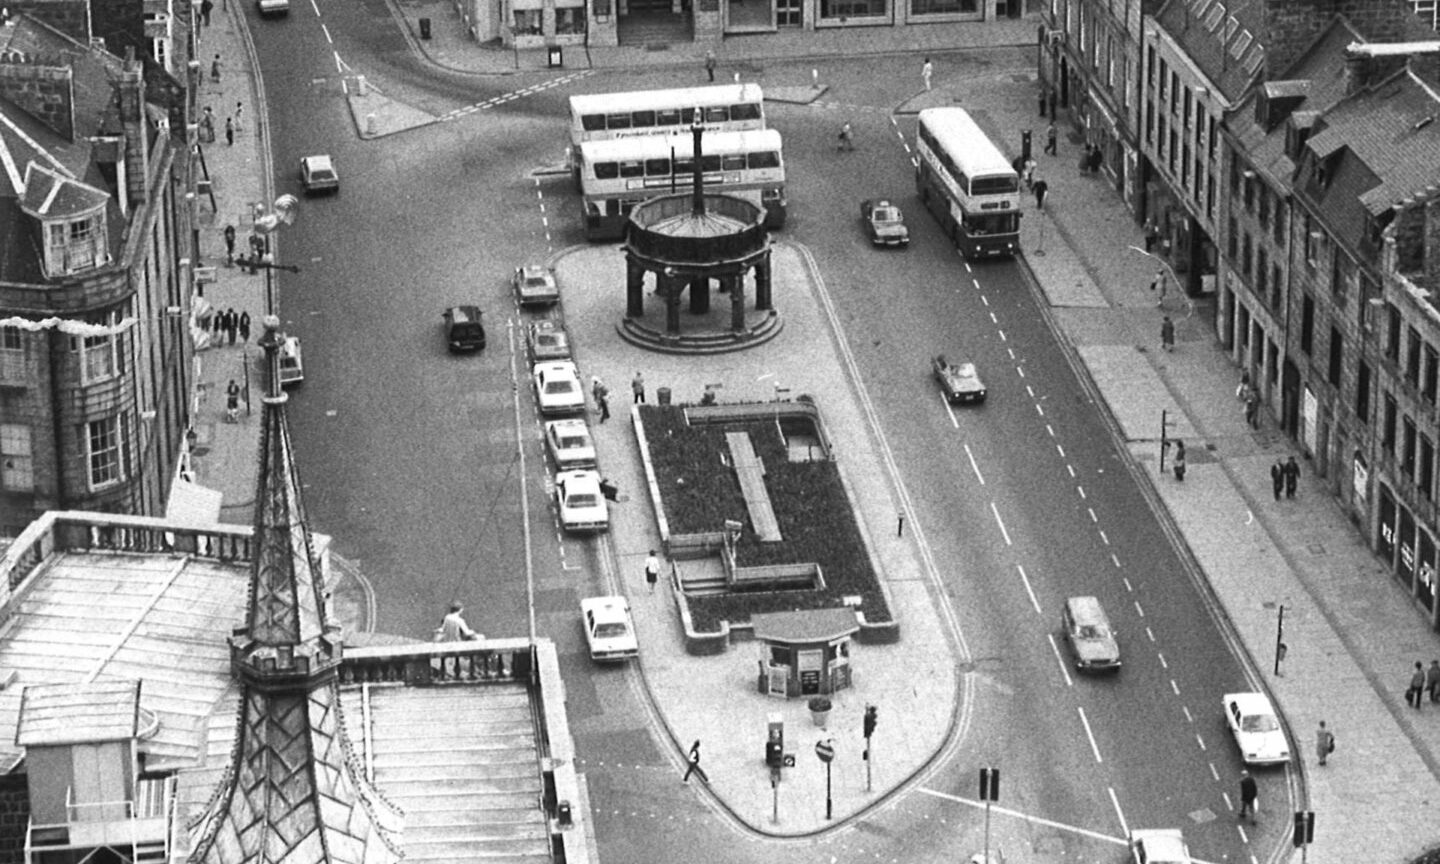 Buses on Aberdeen's Castlegate in 1982